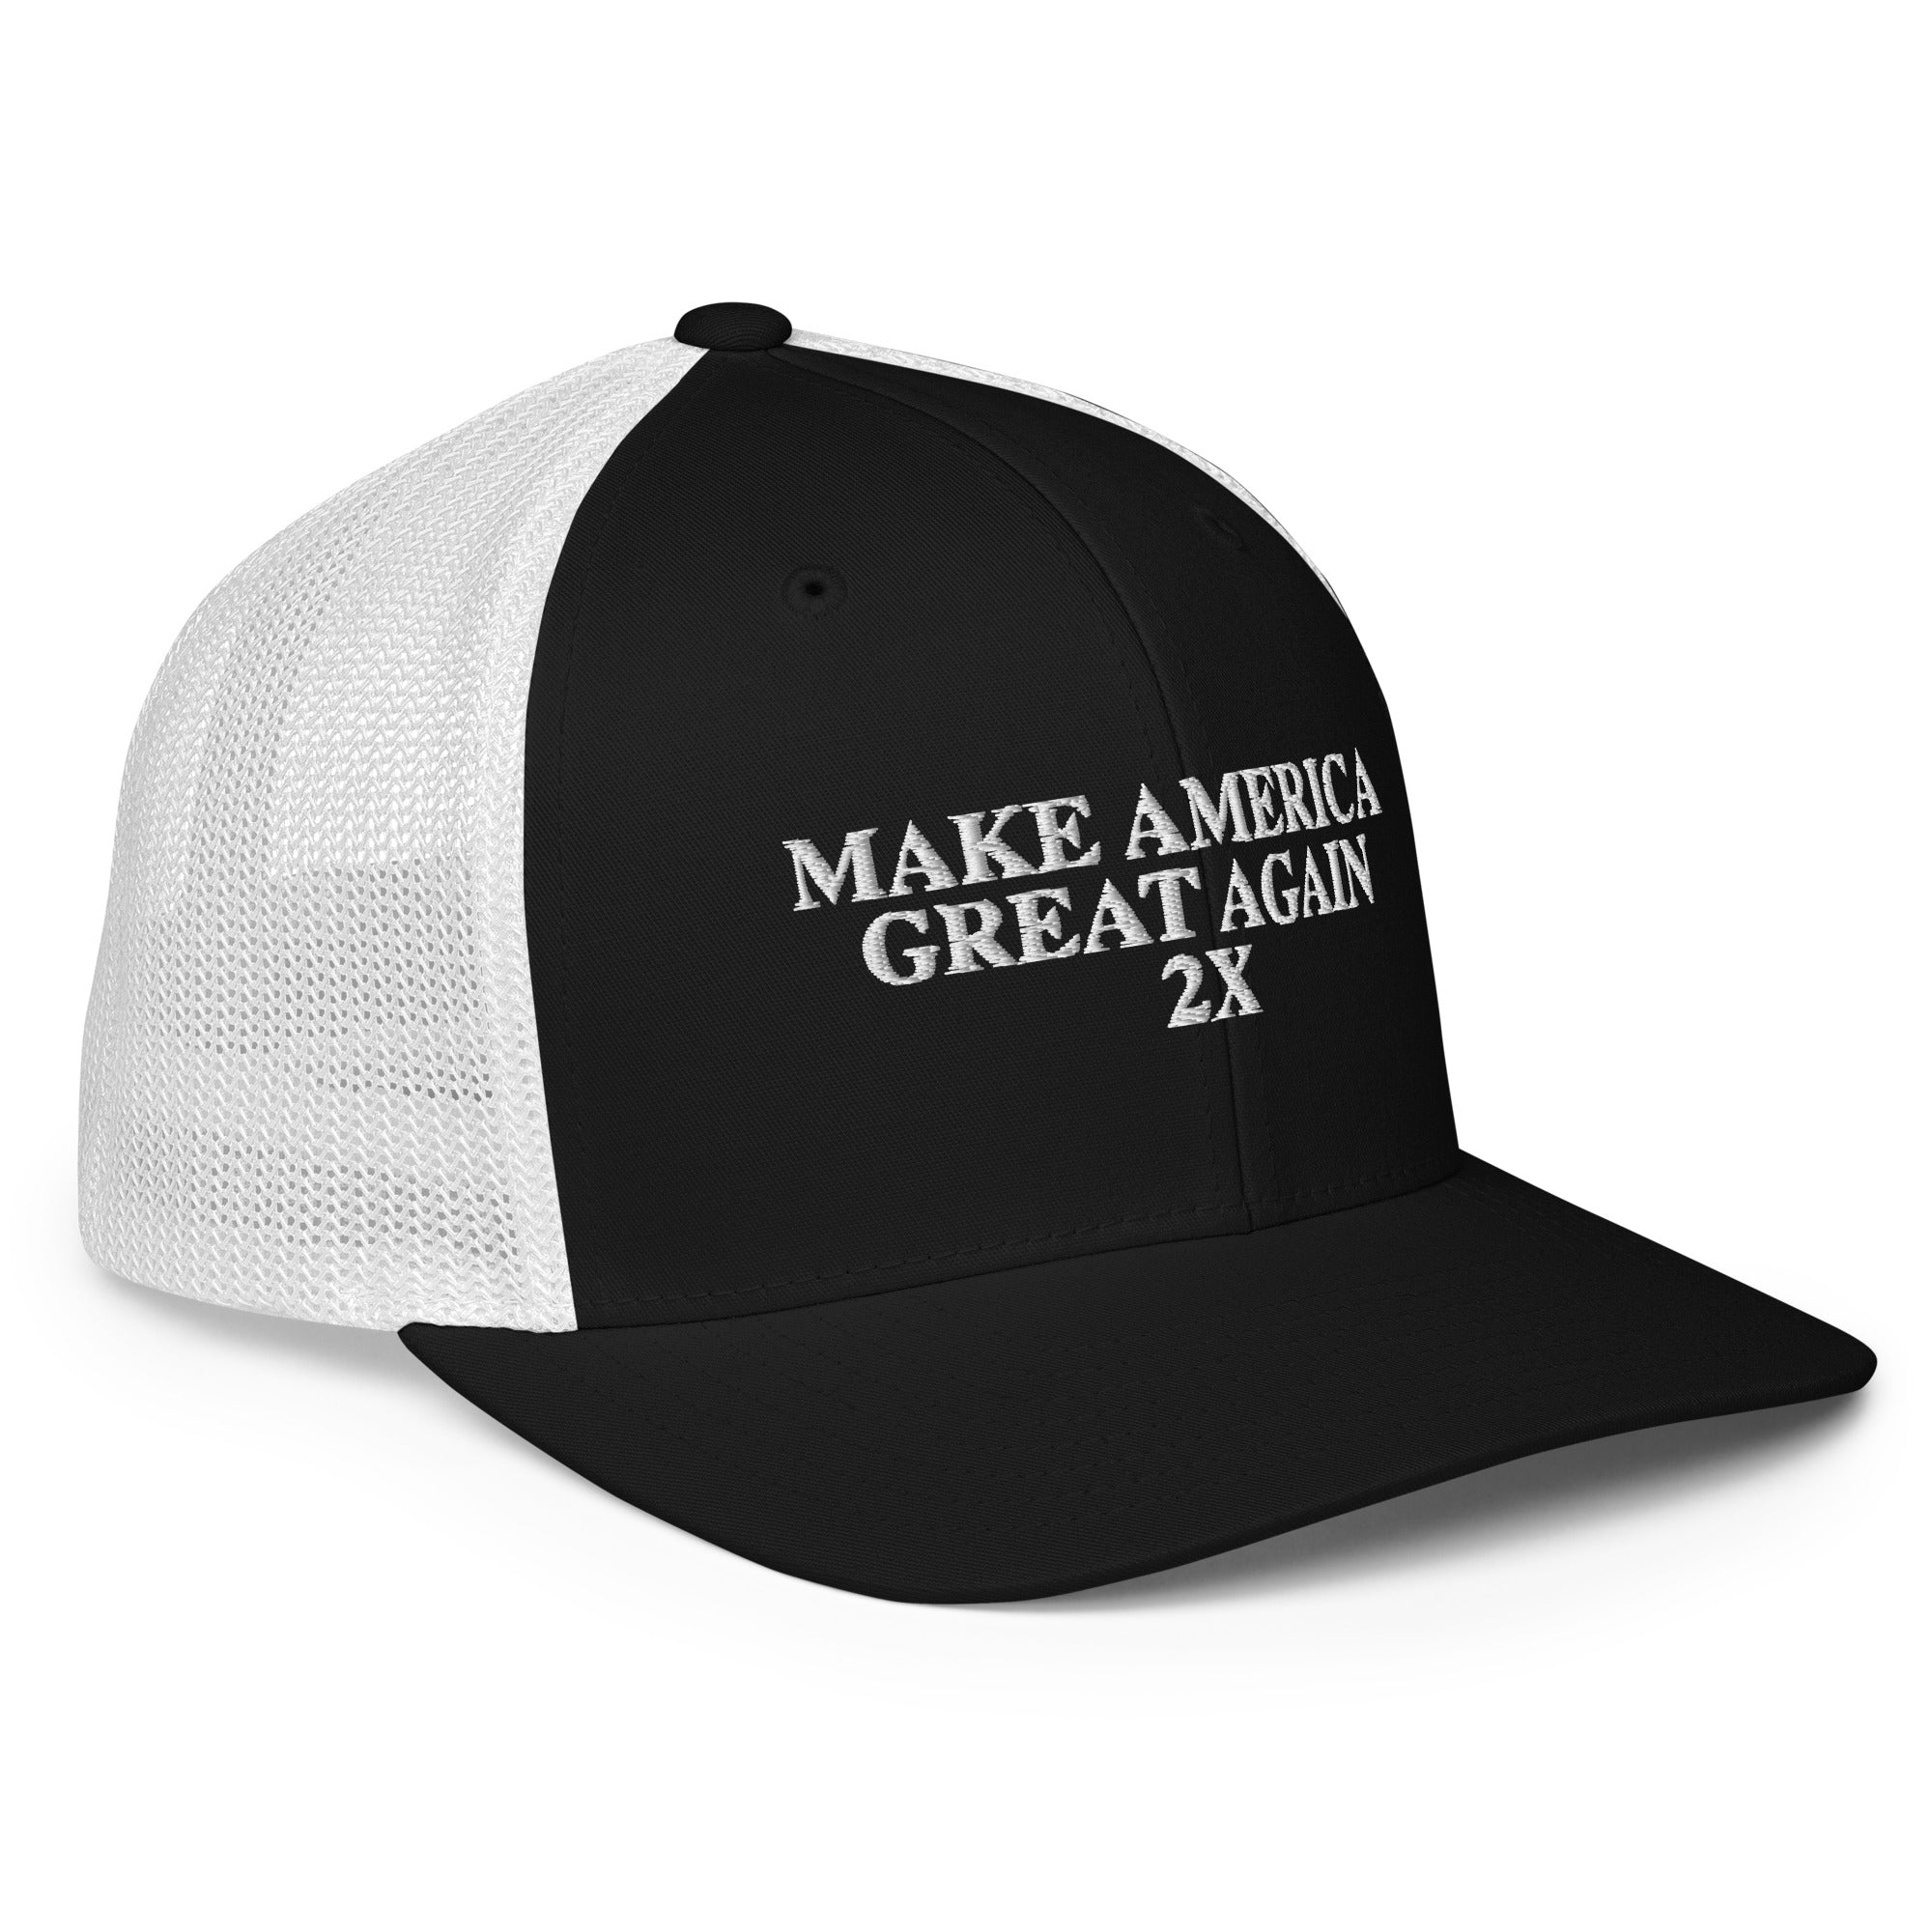 Make America Great Again 2X Flex Fit Trucker Cap - | Drunk America 